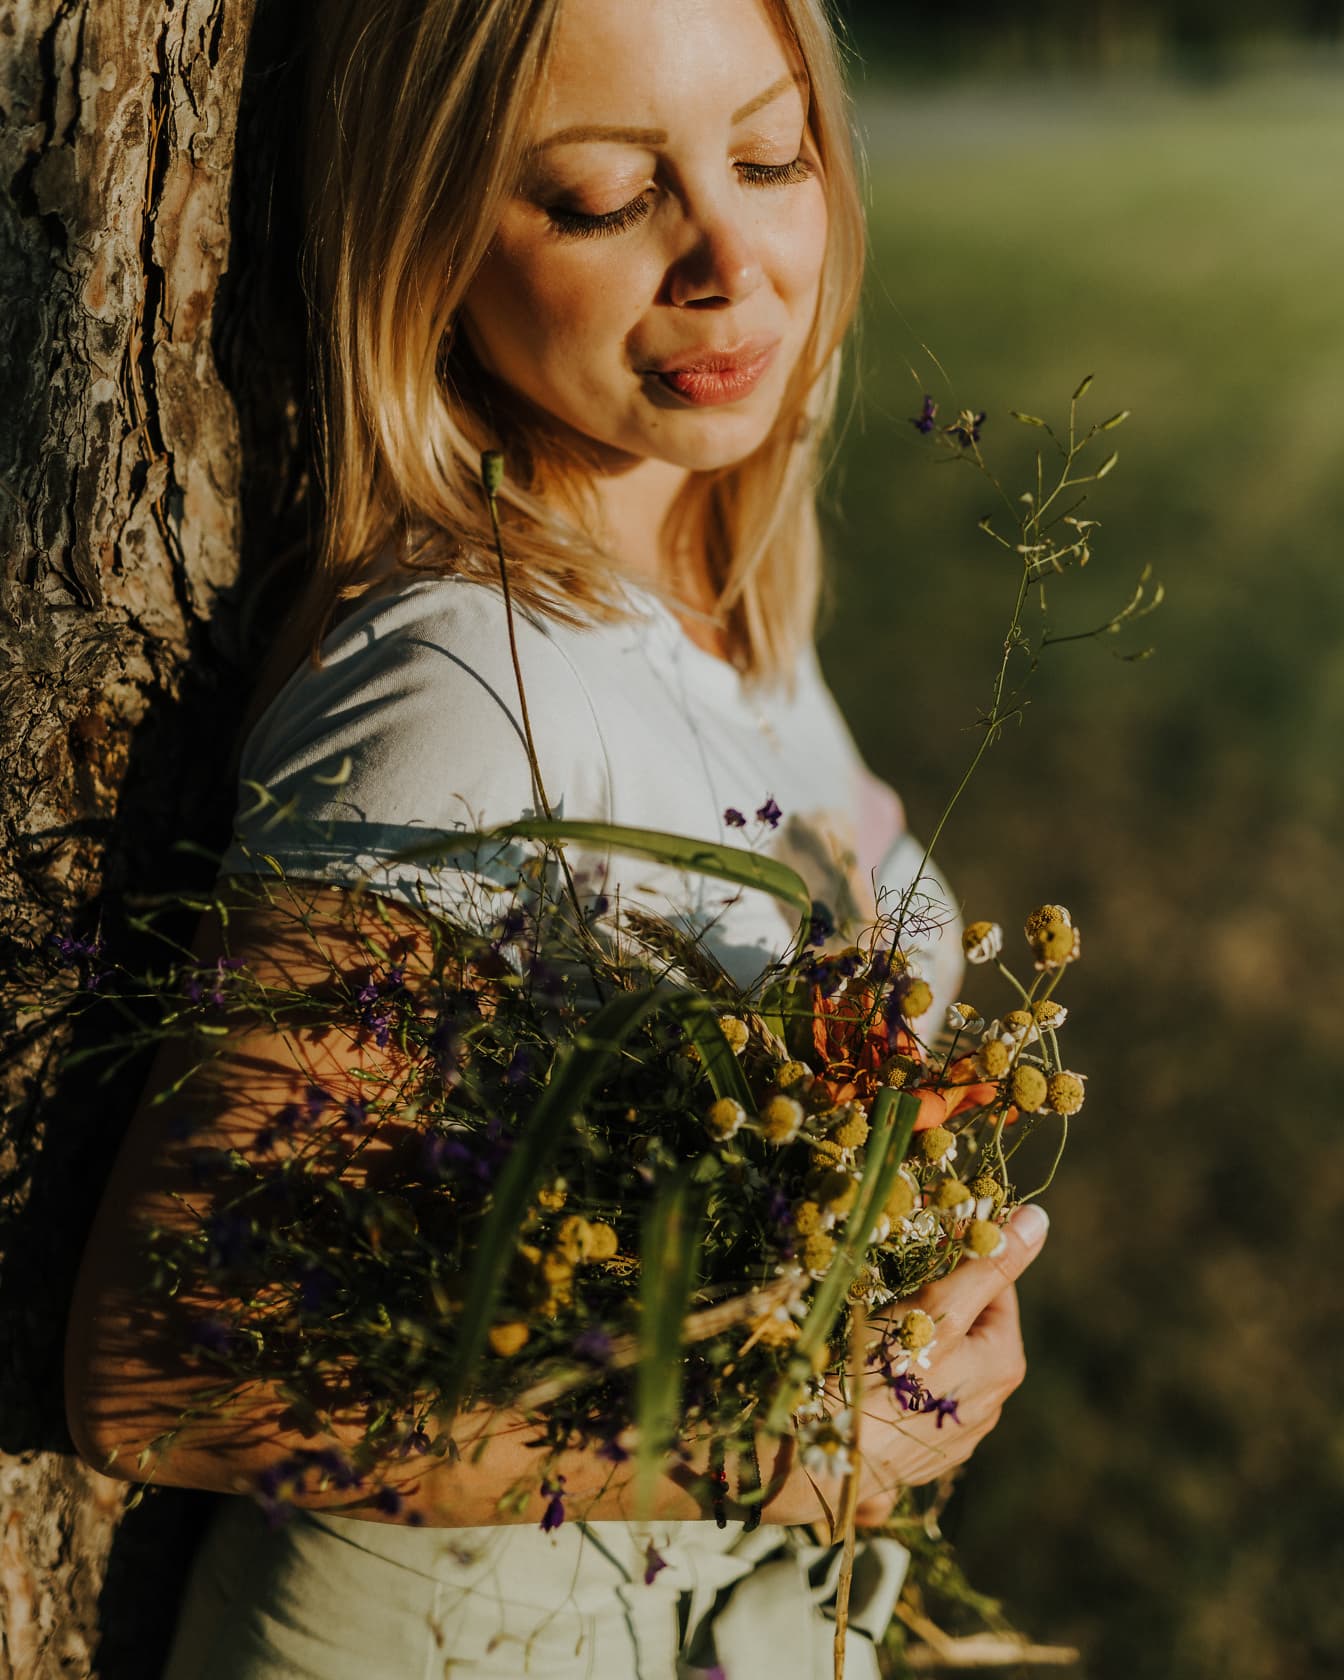 Atraktivní blondýnka foto model s kyticí květin